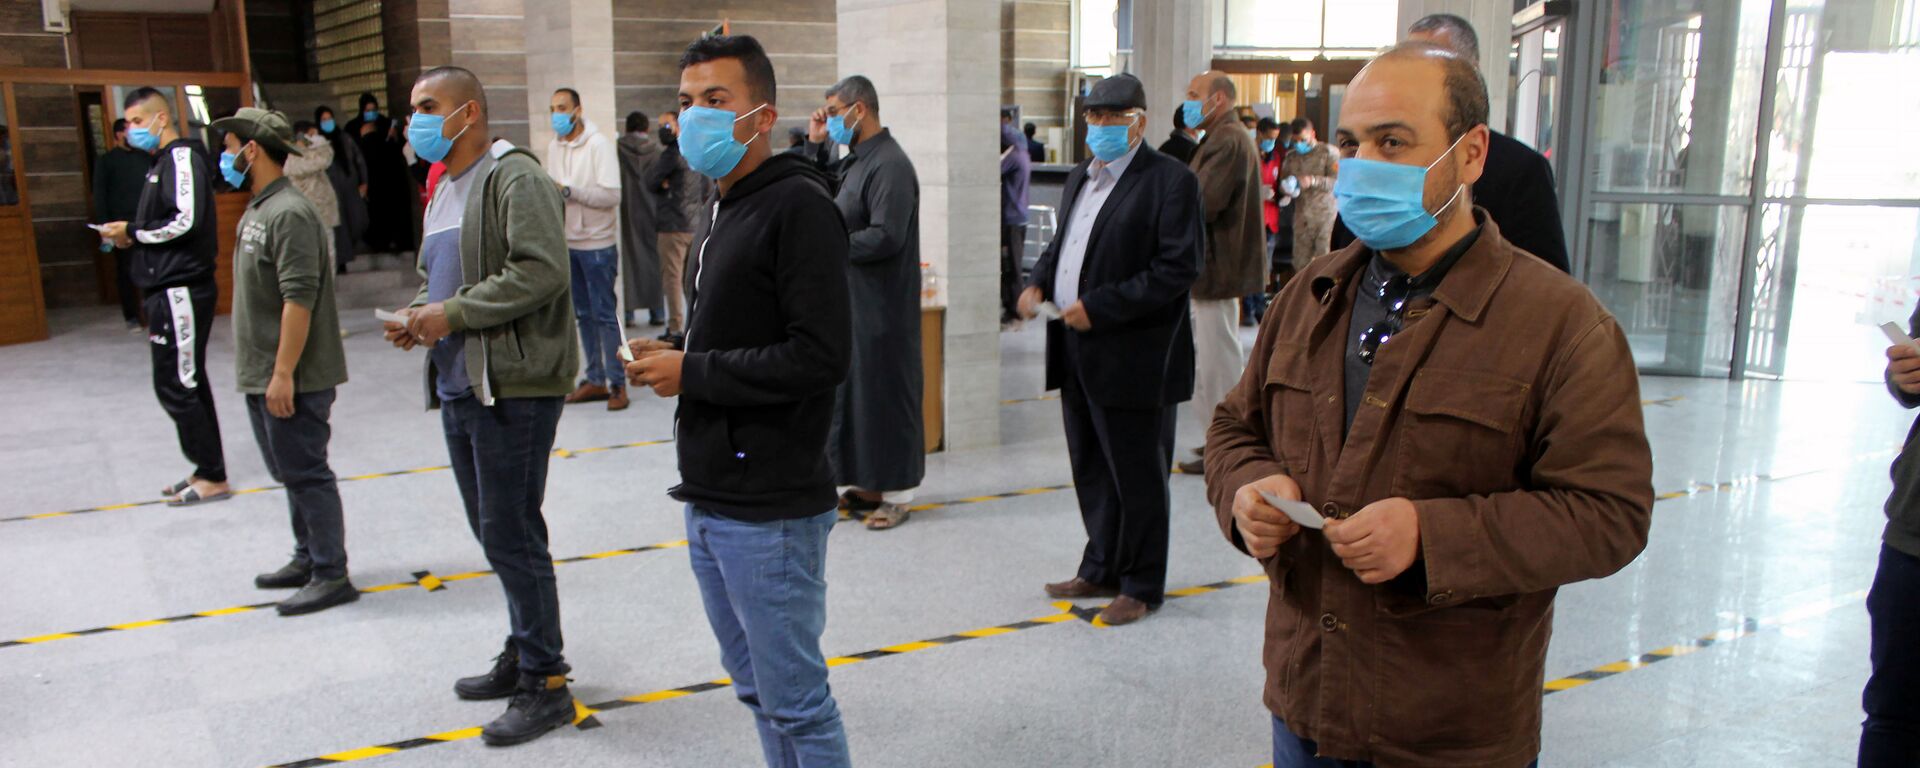 مواطنون يرتدون كمامات طبية كجزء من اجراءات وقائية مرض فيروس كورونا (كوفيد-19)، وهم يقفون على بعد مسافة آمنة وفق معايير منظمة الصحة العالمية، في طوابير في أحد البنوك في مصراتة، ليبيا  22 مارس / آذار 2020 - سبوتنيك عربي, 1920, 25.02.2021